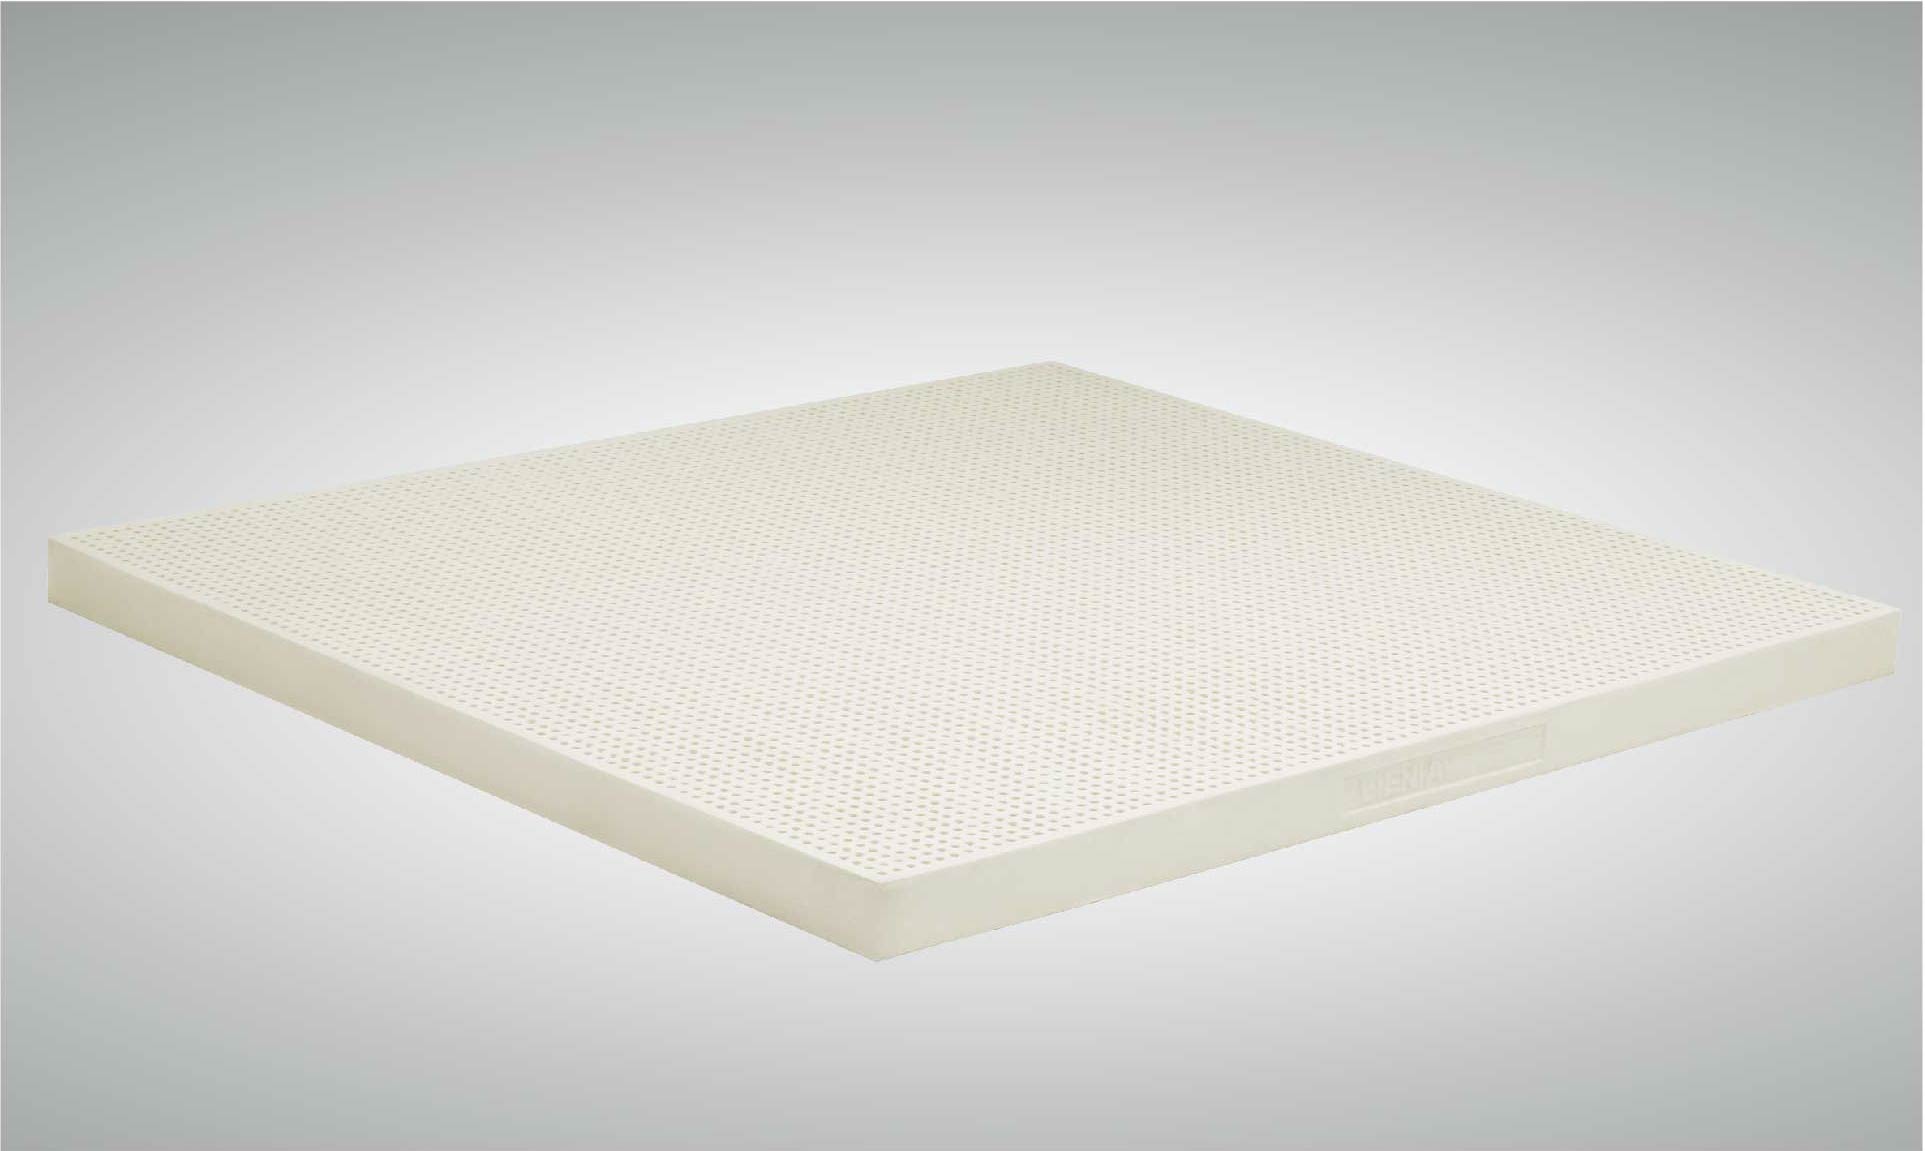 lien a latex mattress